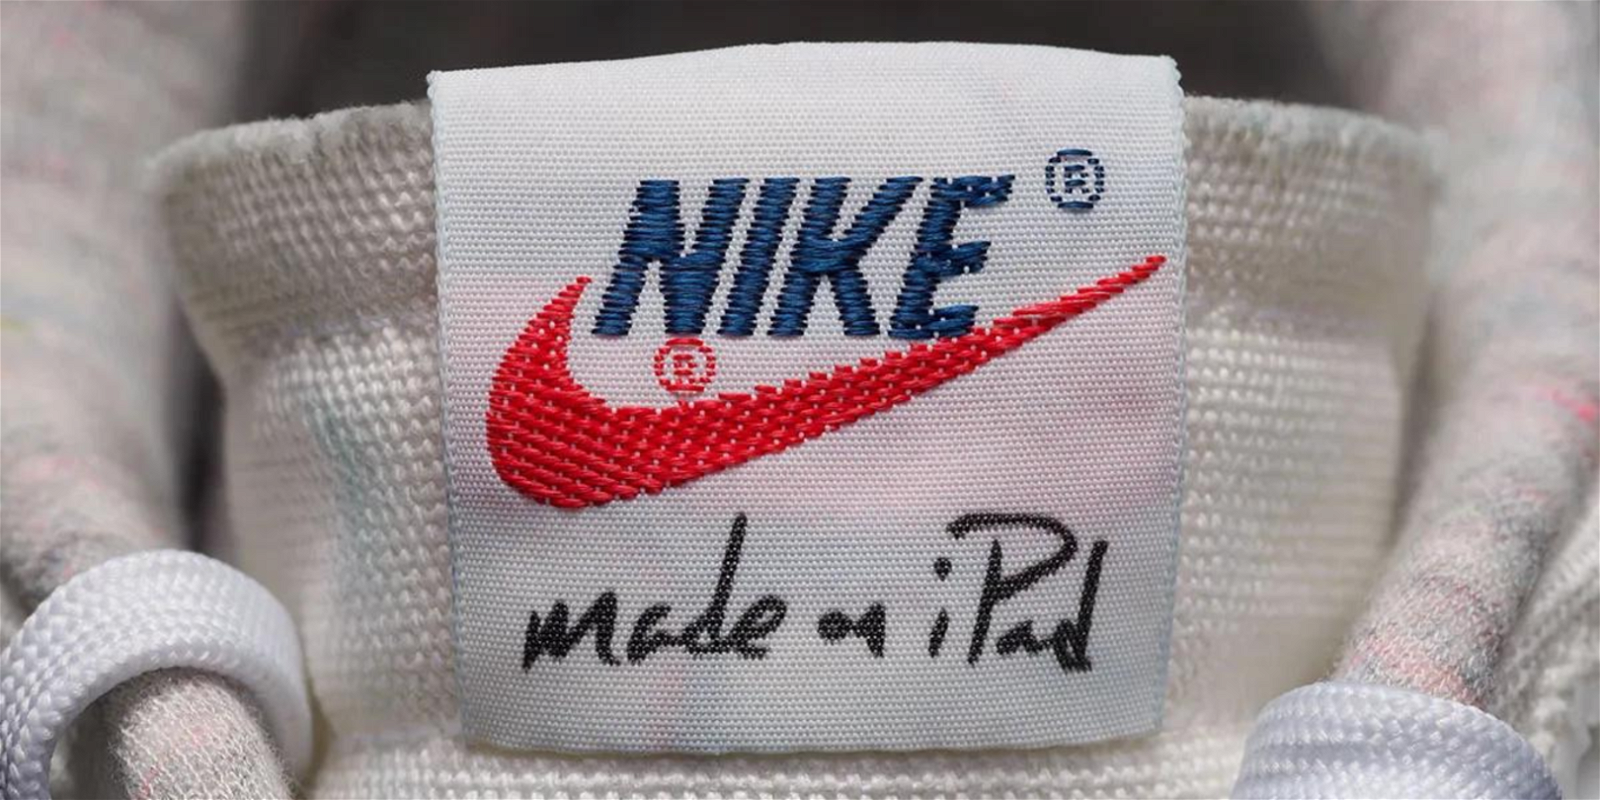 Lengueta de una zapatilla Nike con el texto made in iPad